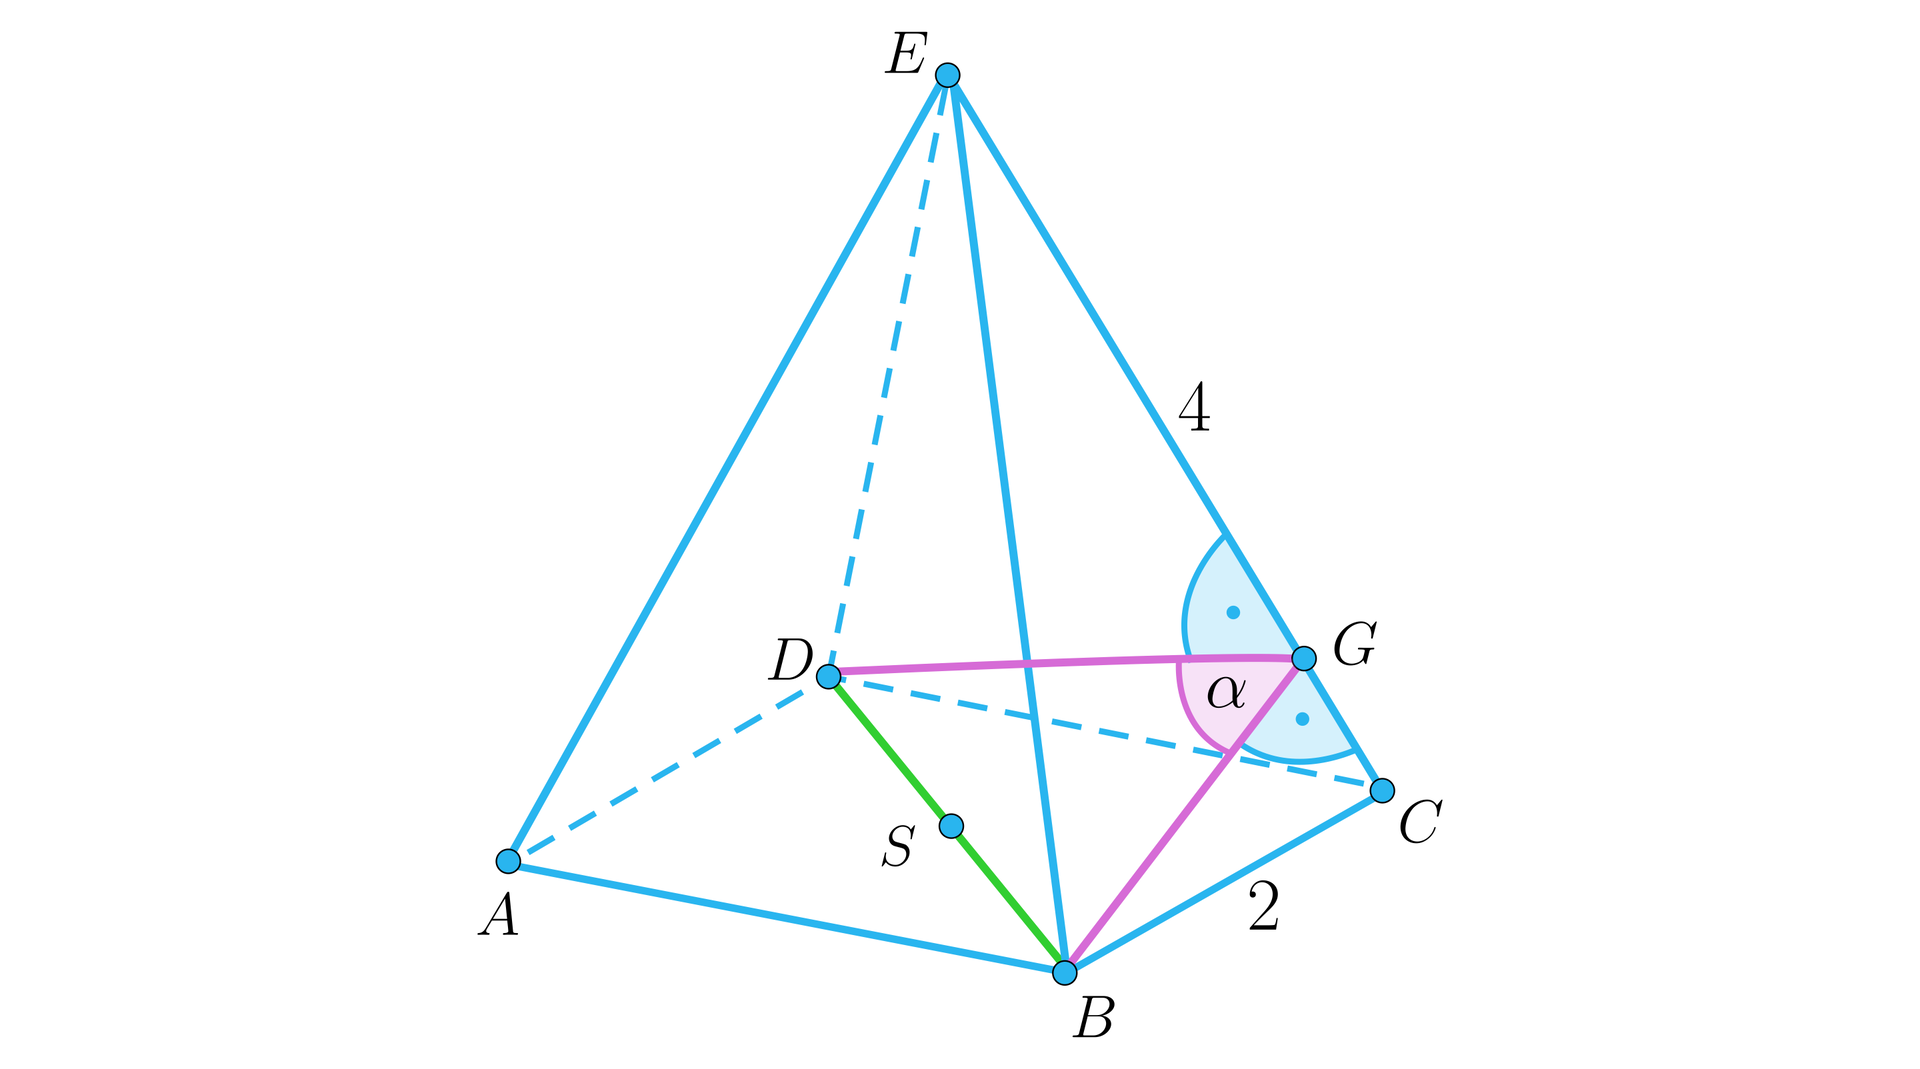 Rysunek przedstawia ostrosłup prawidłowy czworokątny o podstawie A B C D i wierzchołku E. Z punktu B poprowadzony jest odcinek B G, przy czym punkt G leży na krawędzi C E w taki sposób, że kąt między odcinkiem B G i częścią krawędzi, czyli odcinkiem G C wynosi 90 stopni. Analogicznie z punktu D wyprowadzony jest odcinek D G w taki sposób, że kąt między tym odcinkiem a częścią krawędzi, czyli odcinkiem G E wynosi 90 stopni. Kąt między krawędziami, czyli kąt B G D jest opisany jako alfa. Krawędź B C ma długość 2, a krawędź C E ma długość 4.